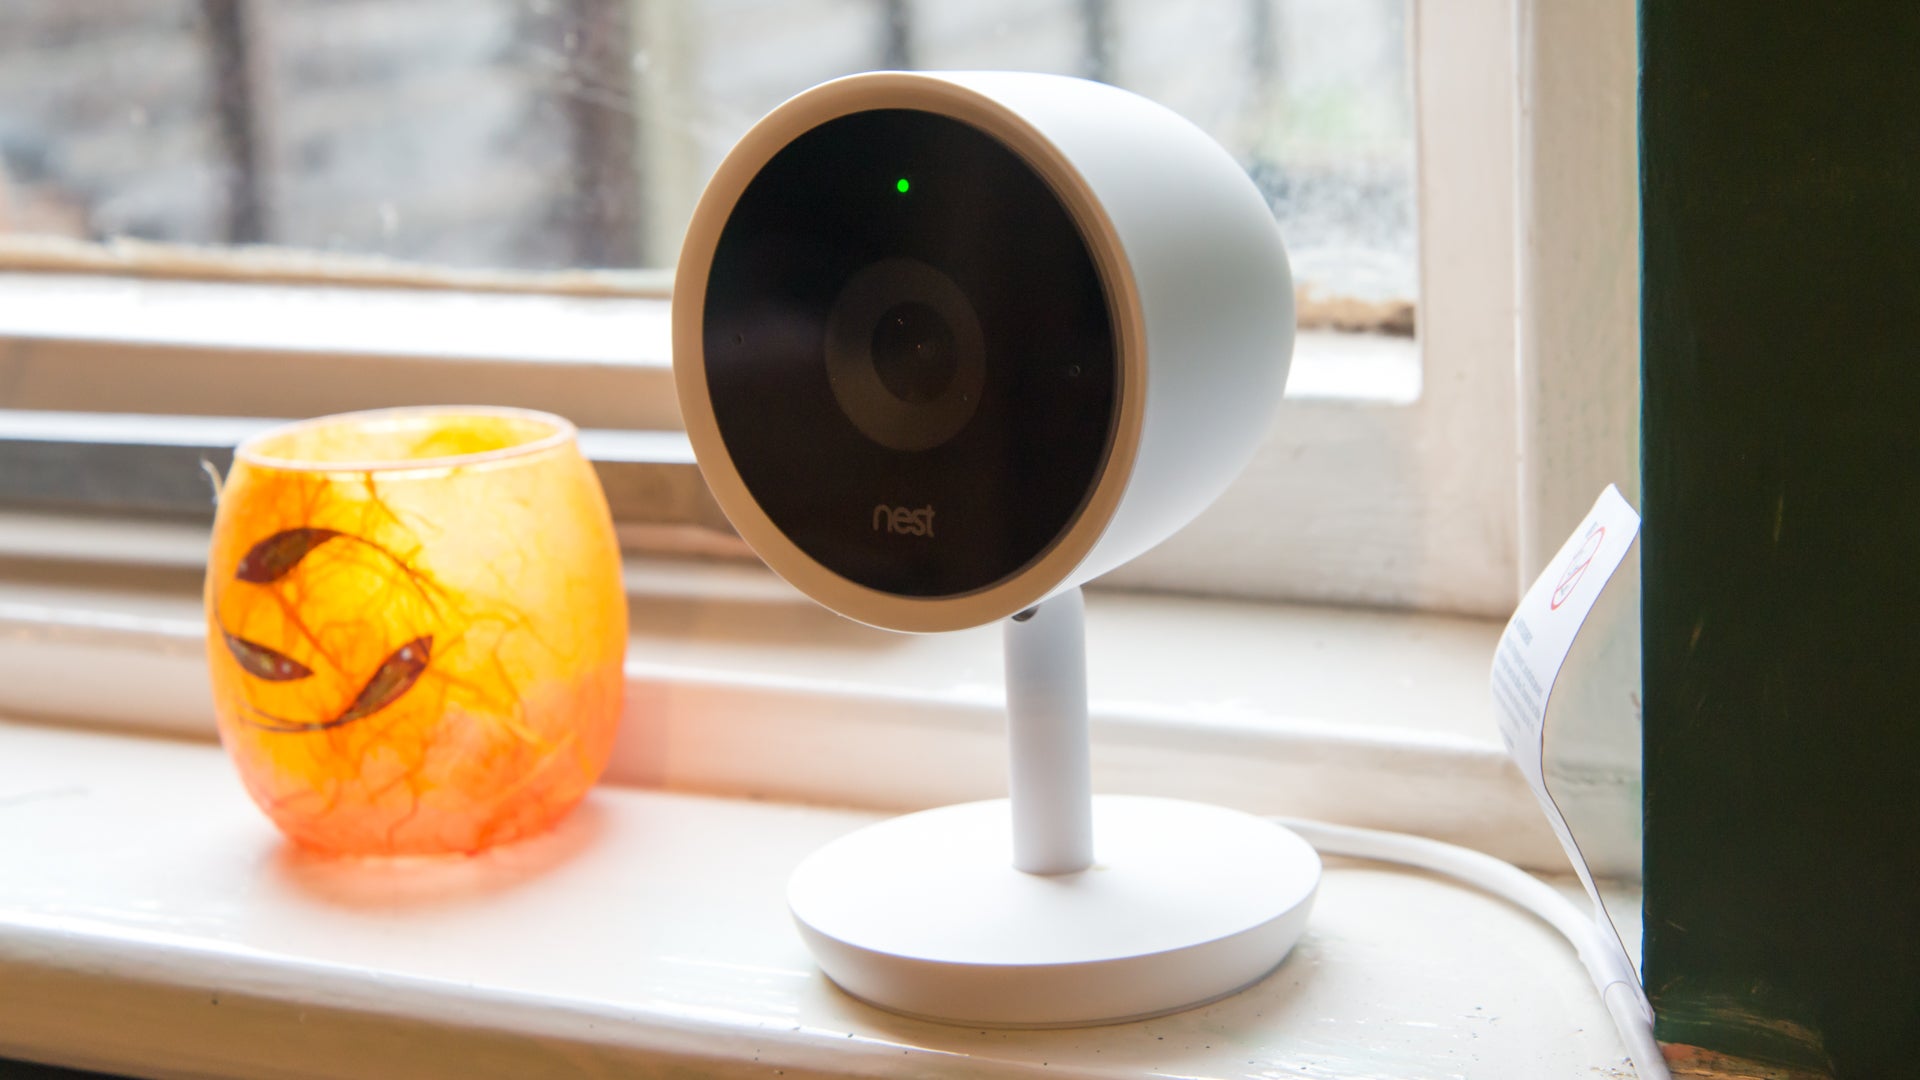 Best indoor security camera 2022